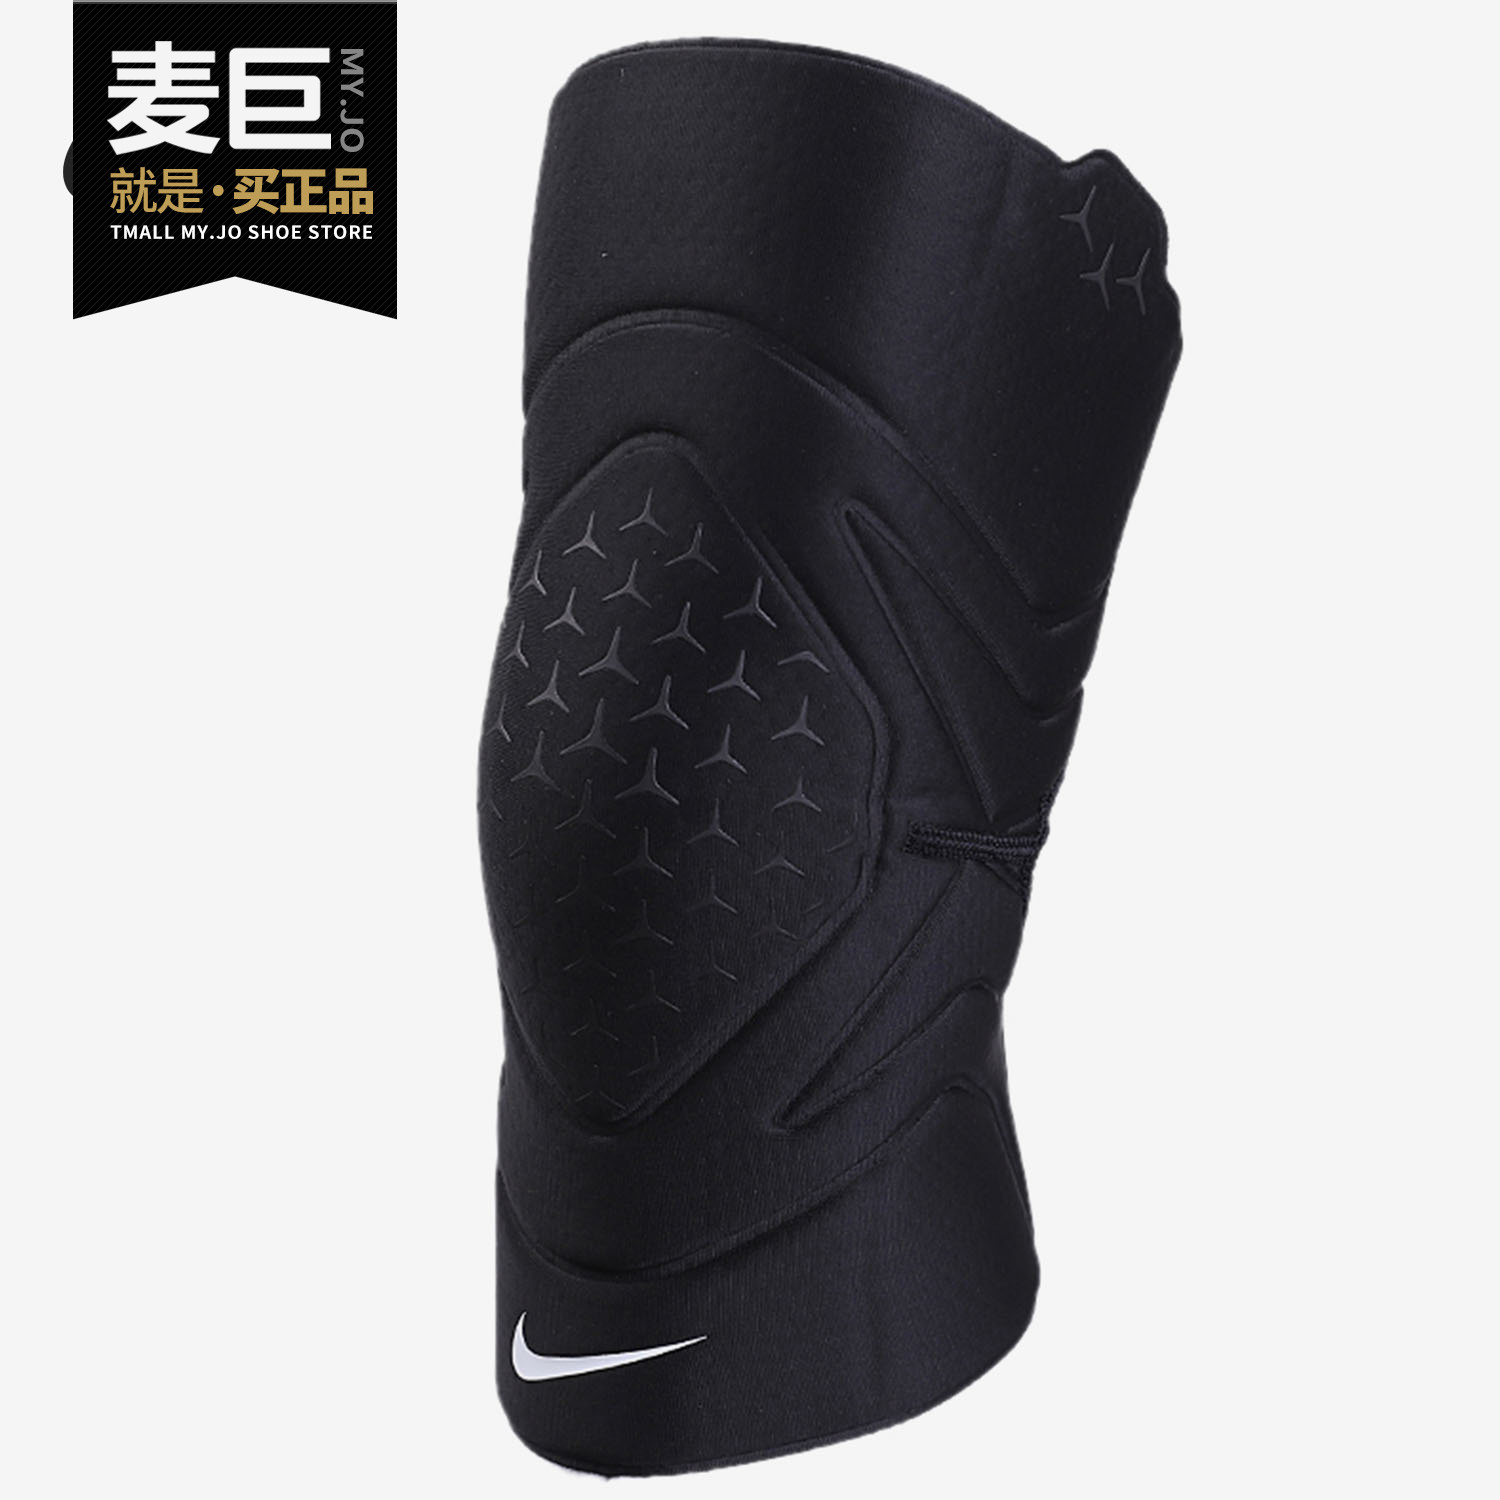 Nike/耐克正品2020新款男女款护膝健身户外运动跑步护具 DA7068